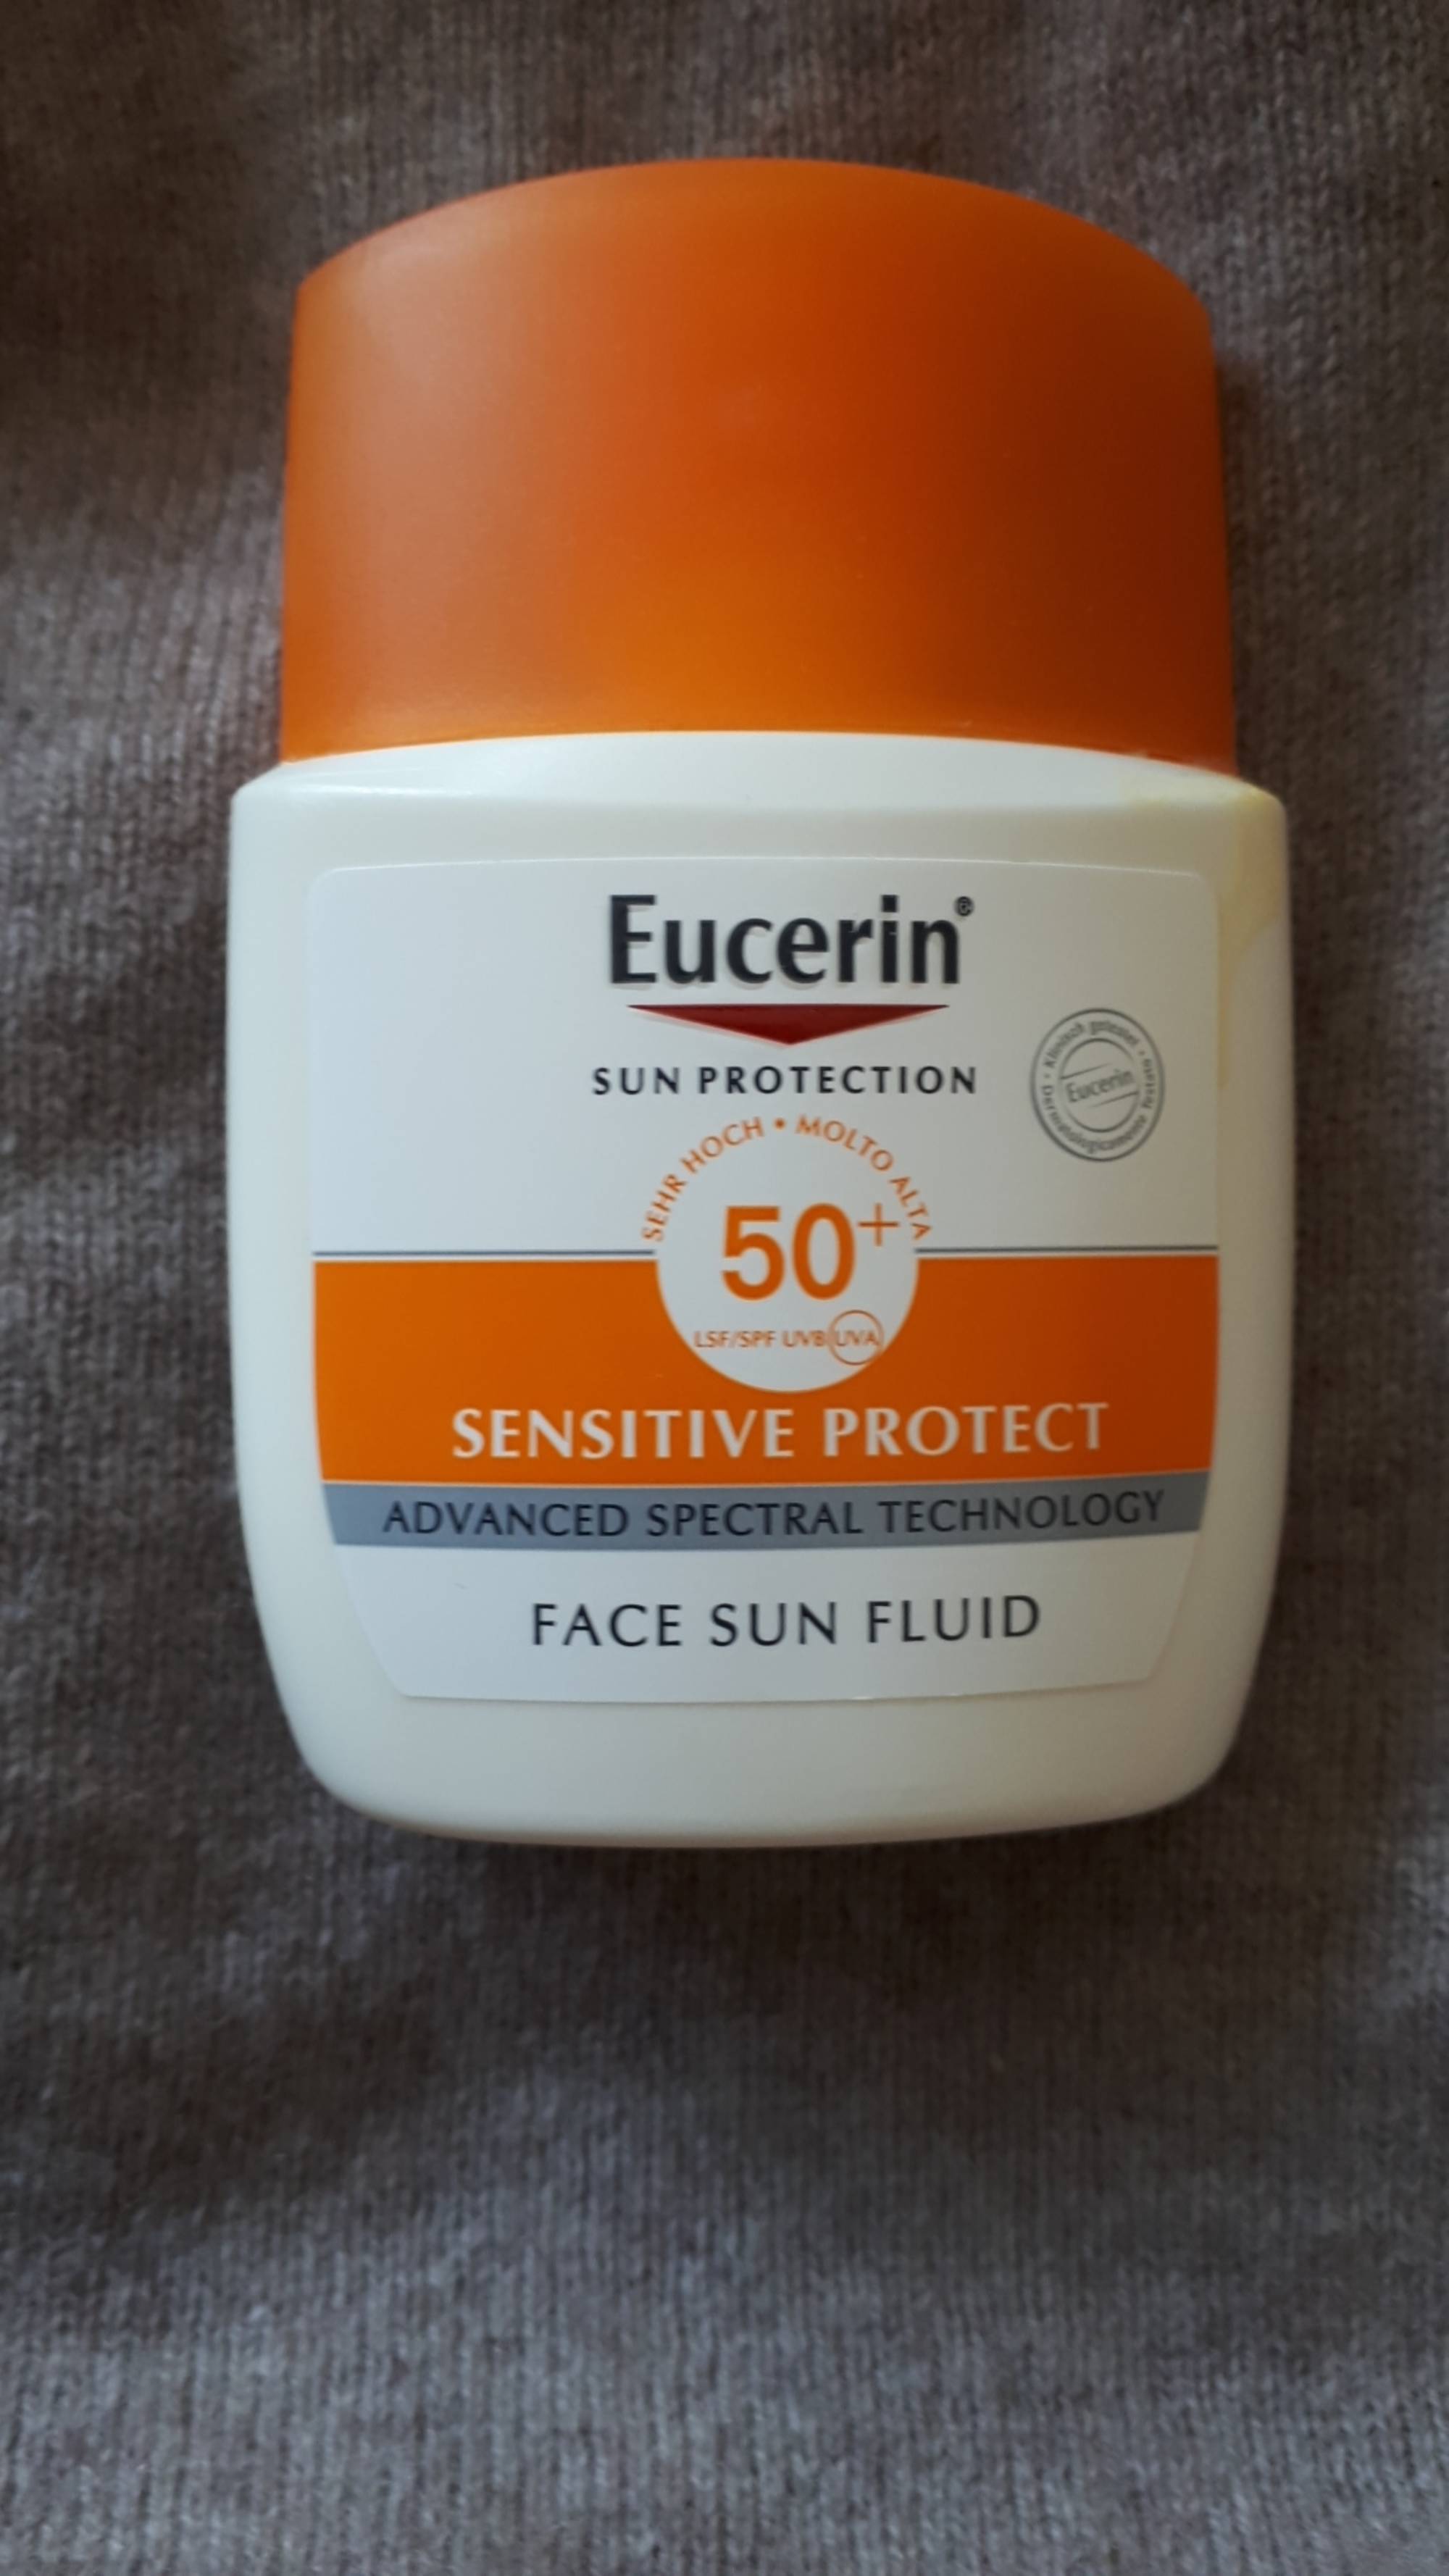 EUCERIN - Sensitive protect - Face sun fluid SPF 50+